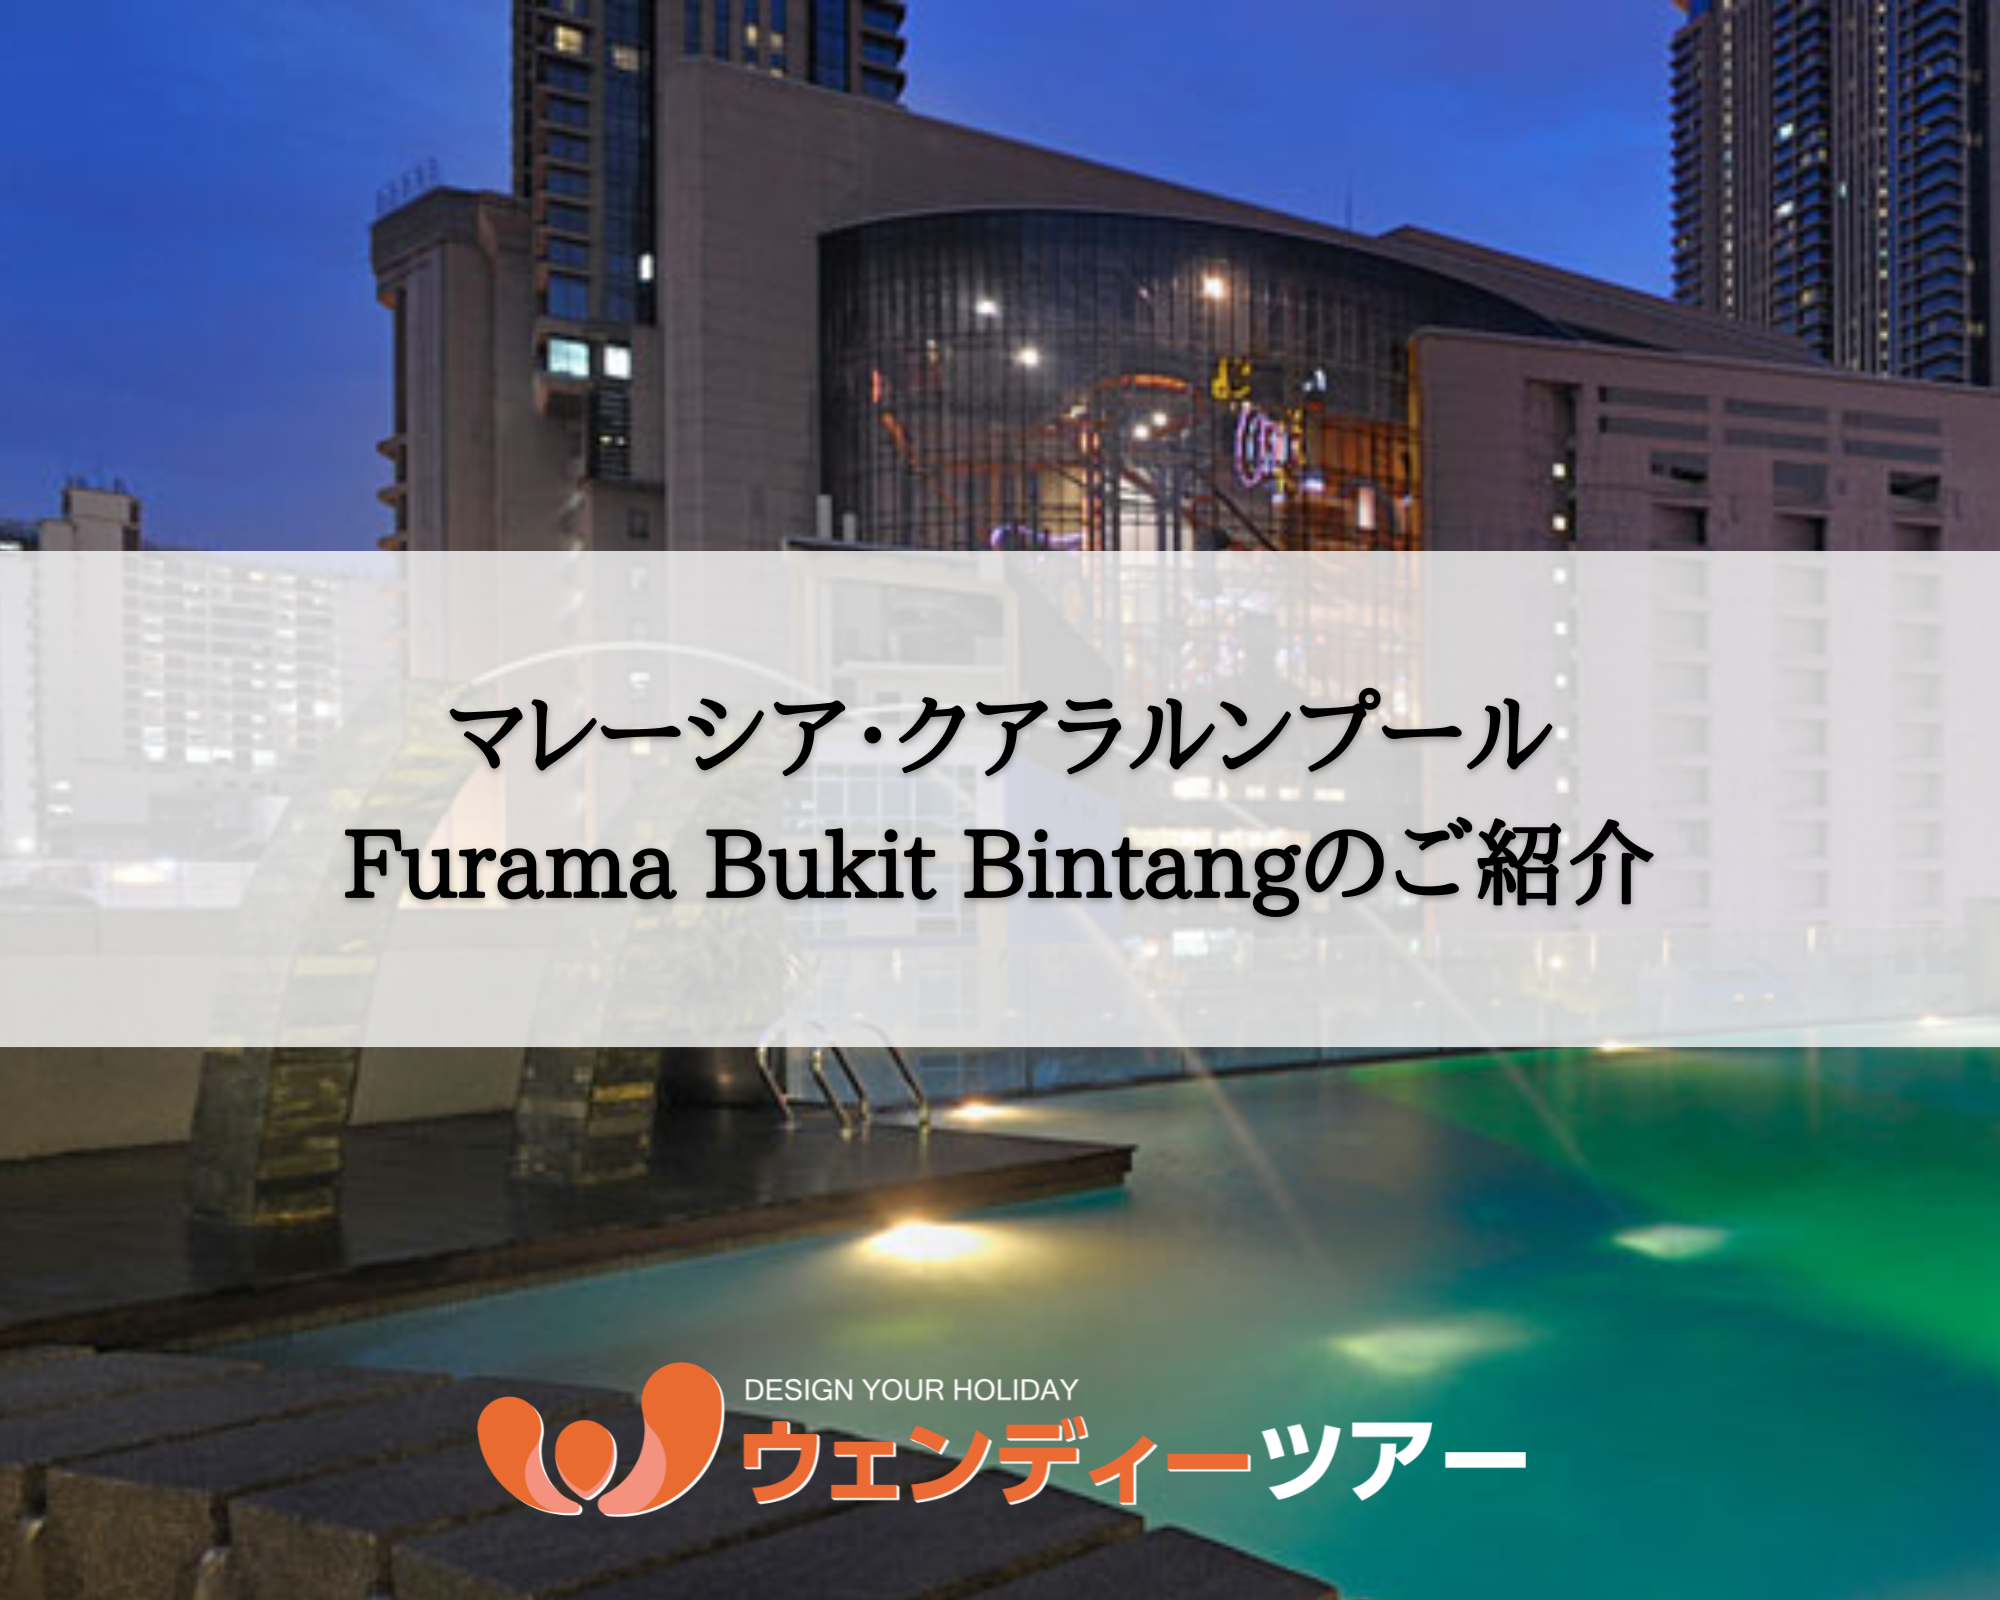 【マレーシア・クアラルンプール】Furama Bukit Bintang